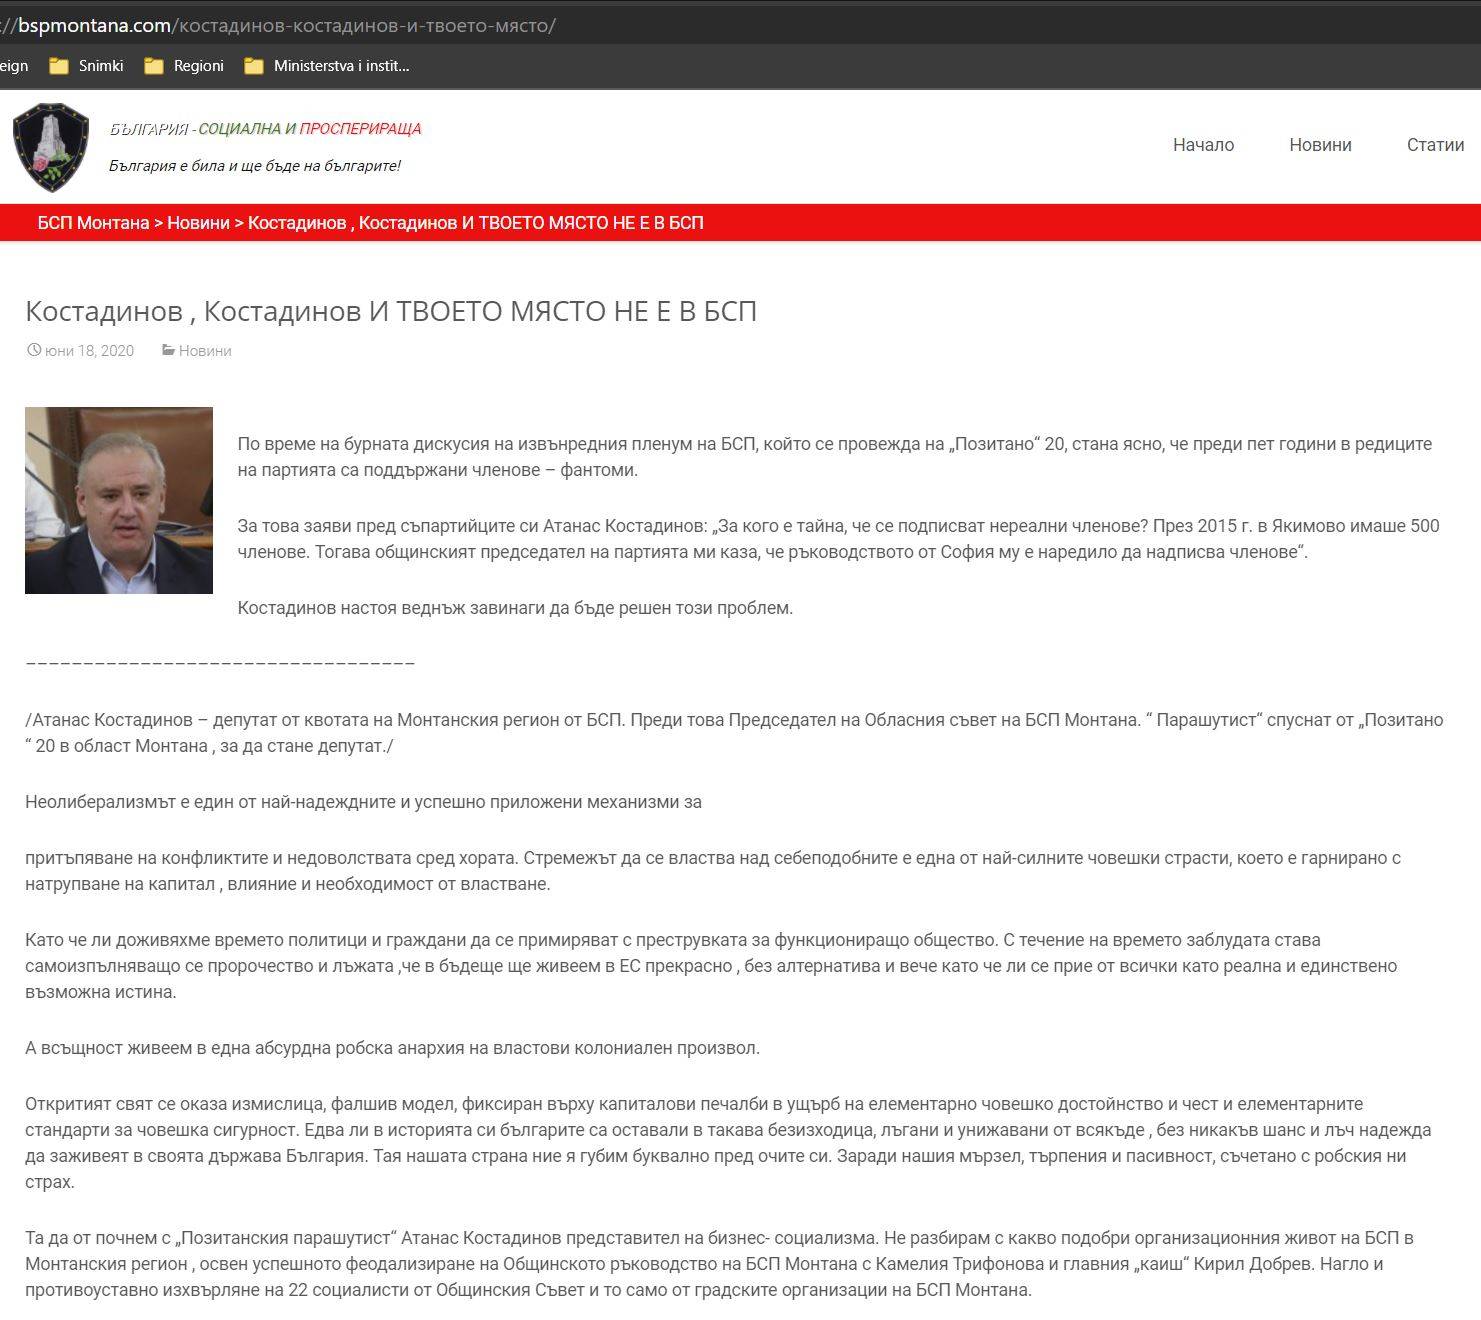 Редовият социалист от БСП-Монтана Илия Миладинов буквално срива със земята представителят на бизнес-социализма, както го нарича